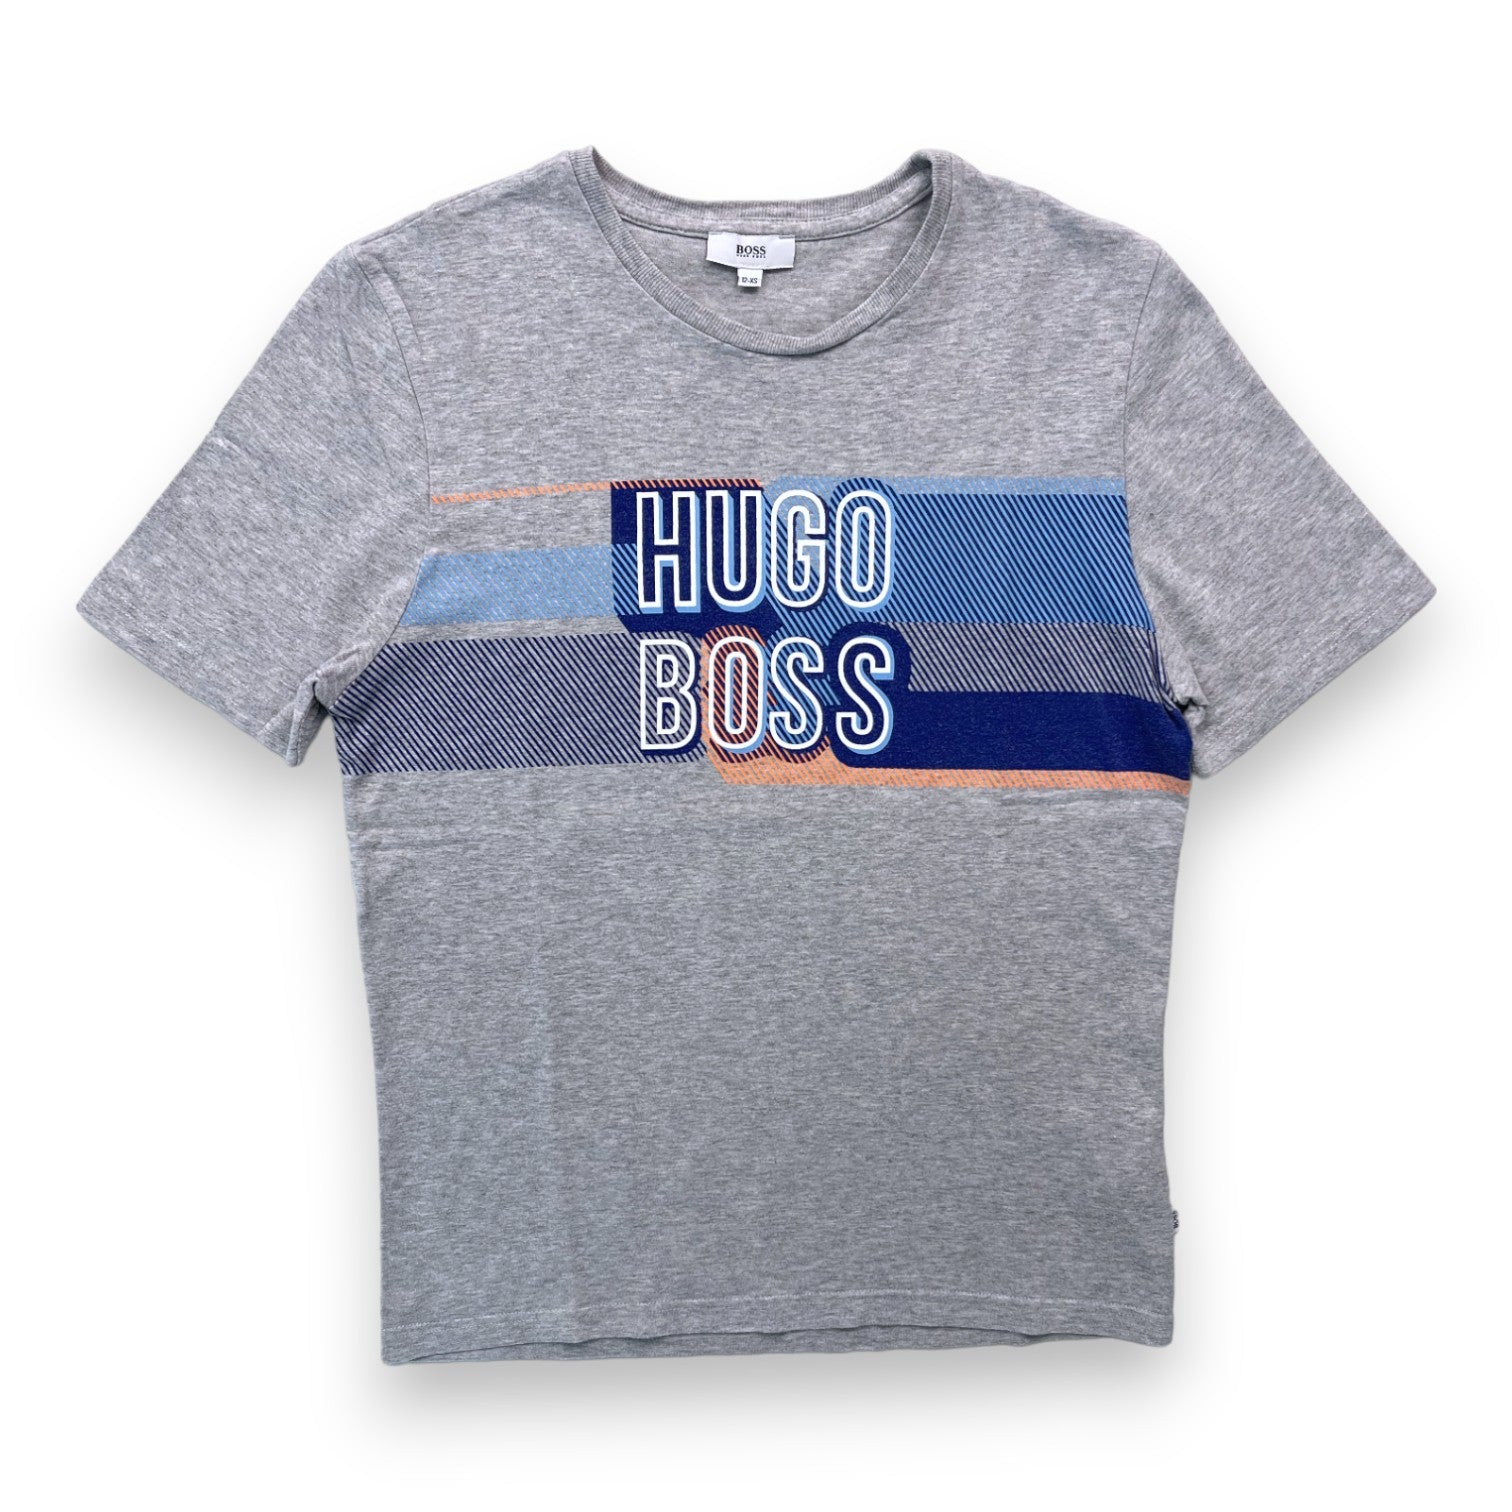 HUGO BOSS - T shirt gris à motifs - 12 ans